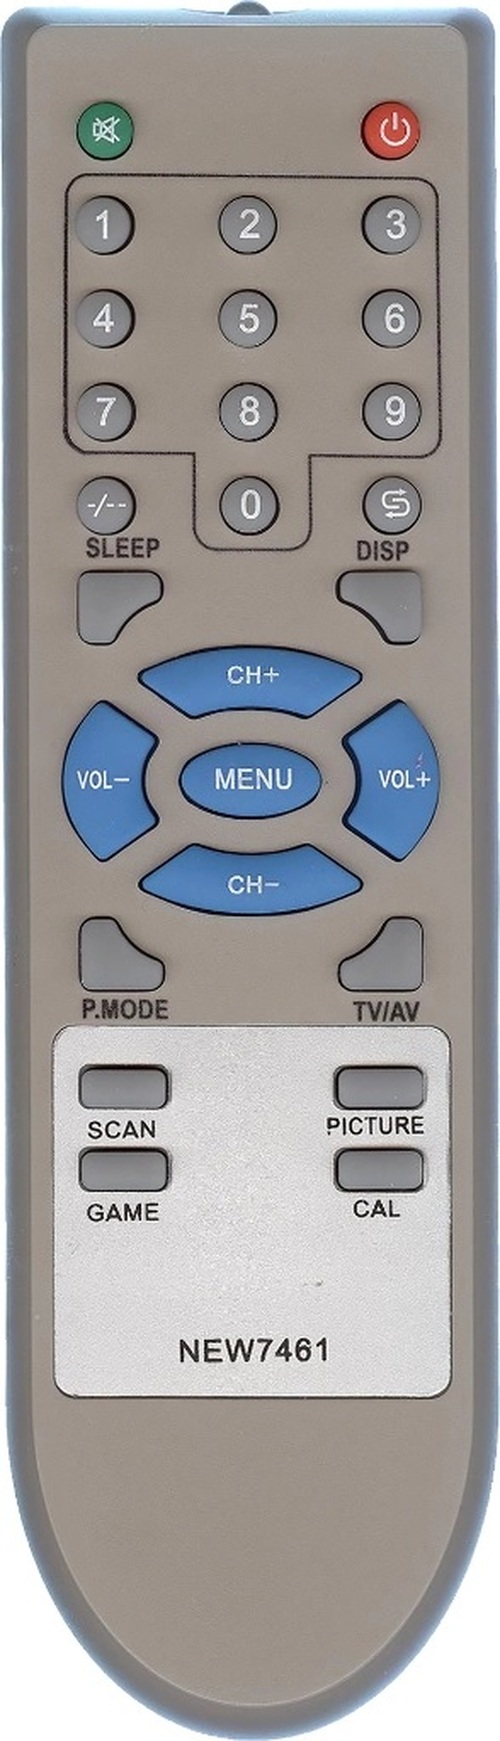 Пульт дистанционного управления для ТВ RUBIN/ROLSEN NEW7461/37M10 (для моделей C1480/21R45/21SR45)/IZUMI